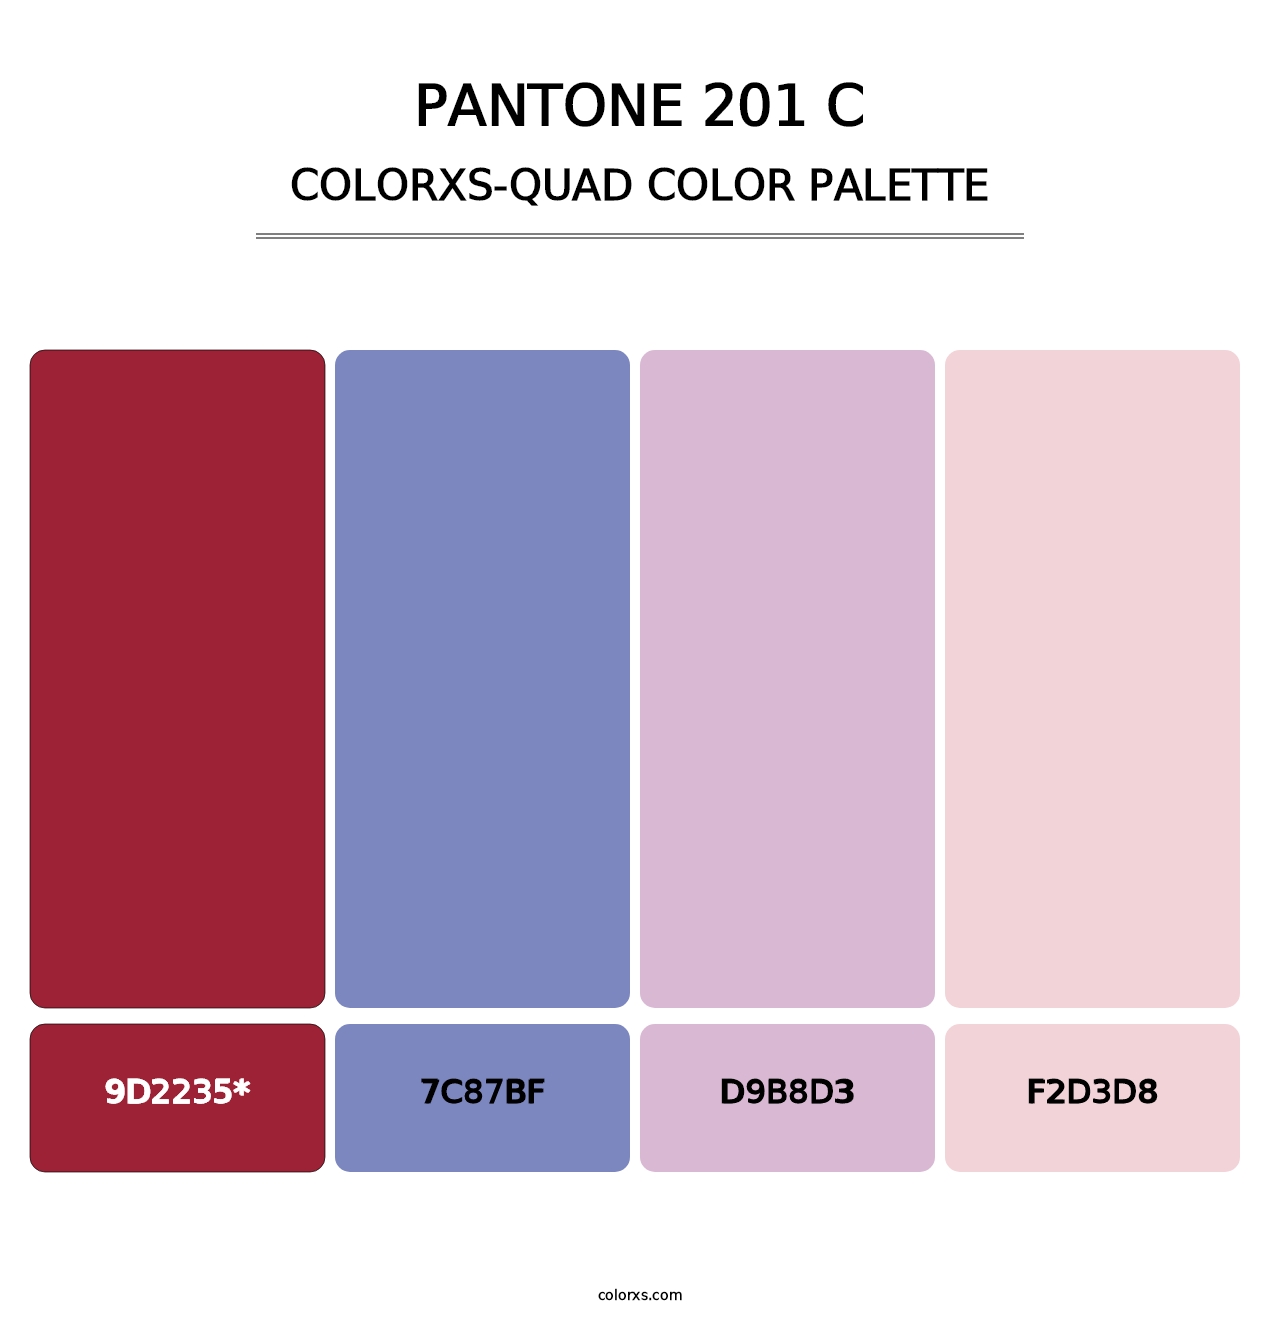 PANTONE 201 C - Colorxs Quad Palette